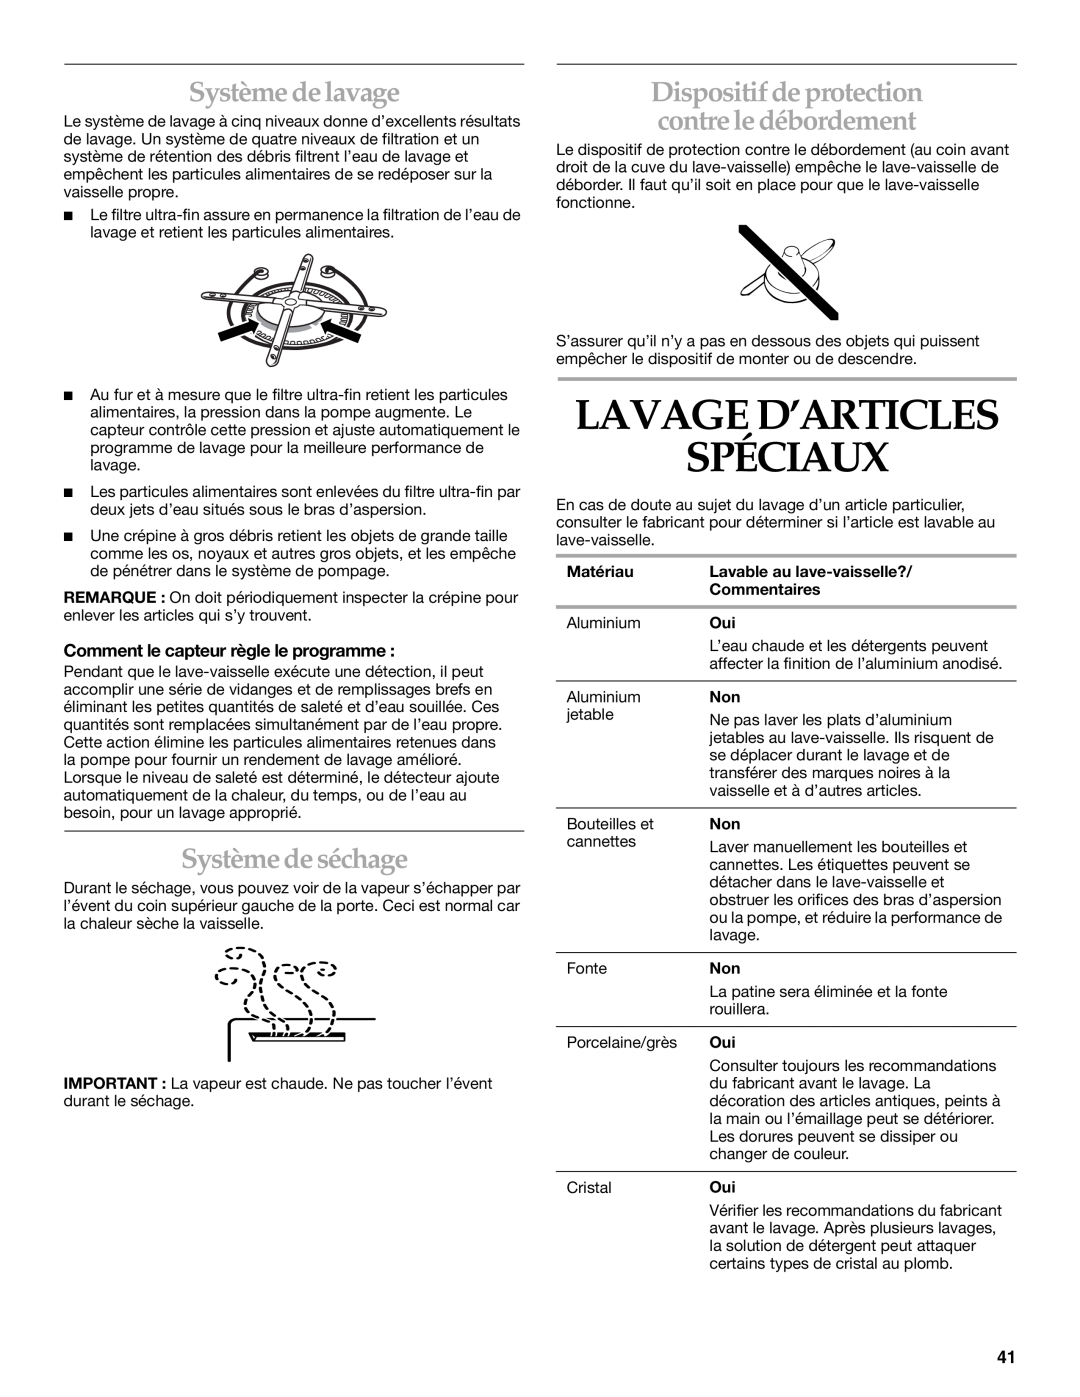 KitchenAid KUDS01DL manual Lavage D’Articles Spéciaux, Système de lavage, Système de séchage 